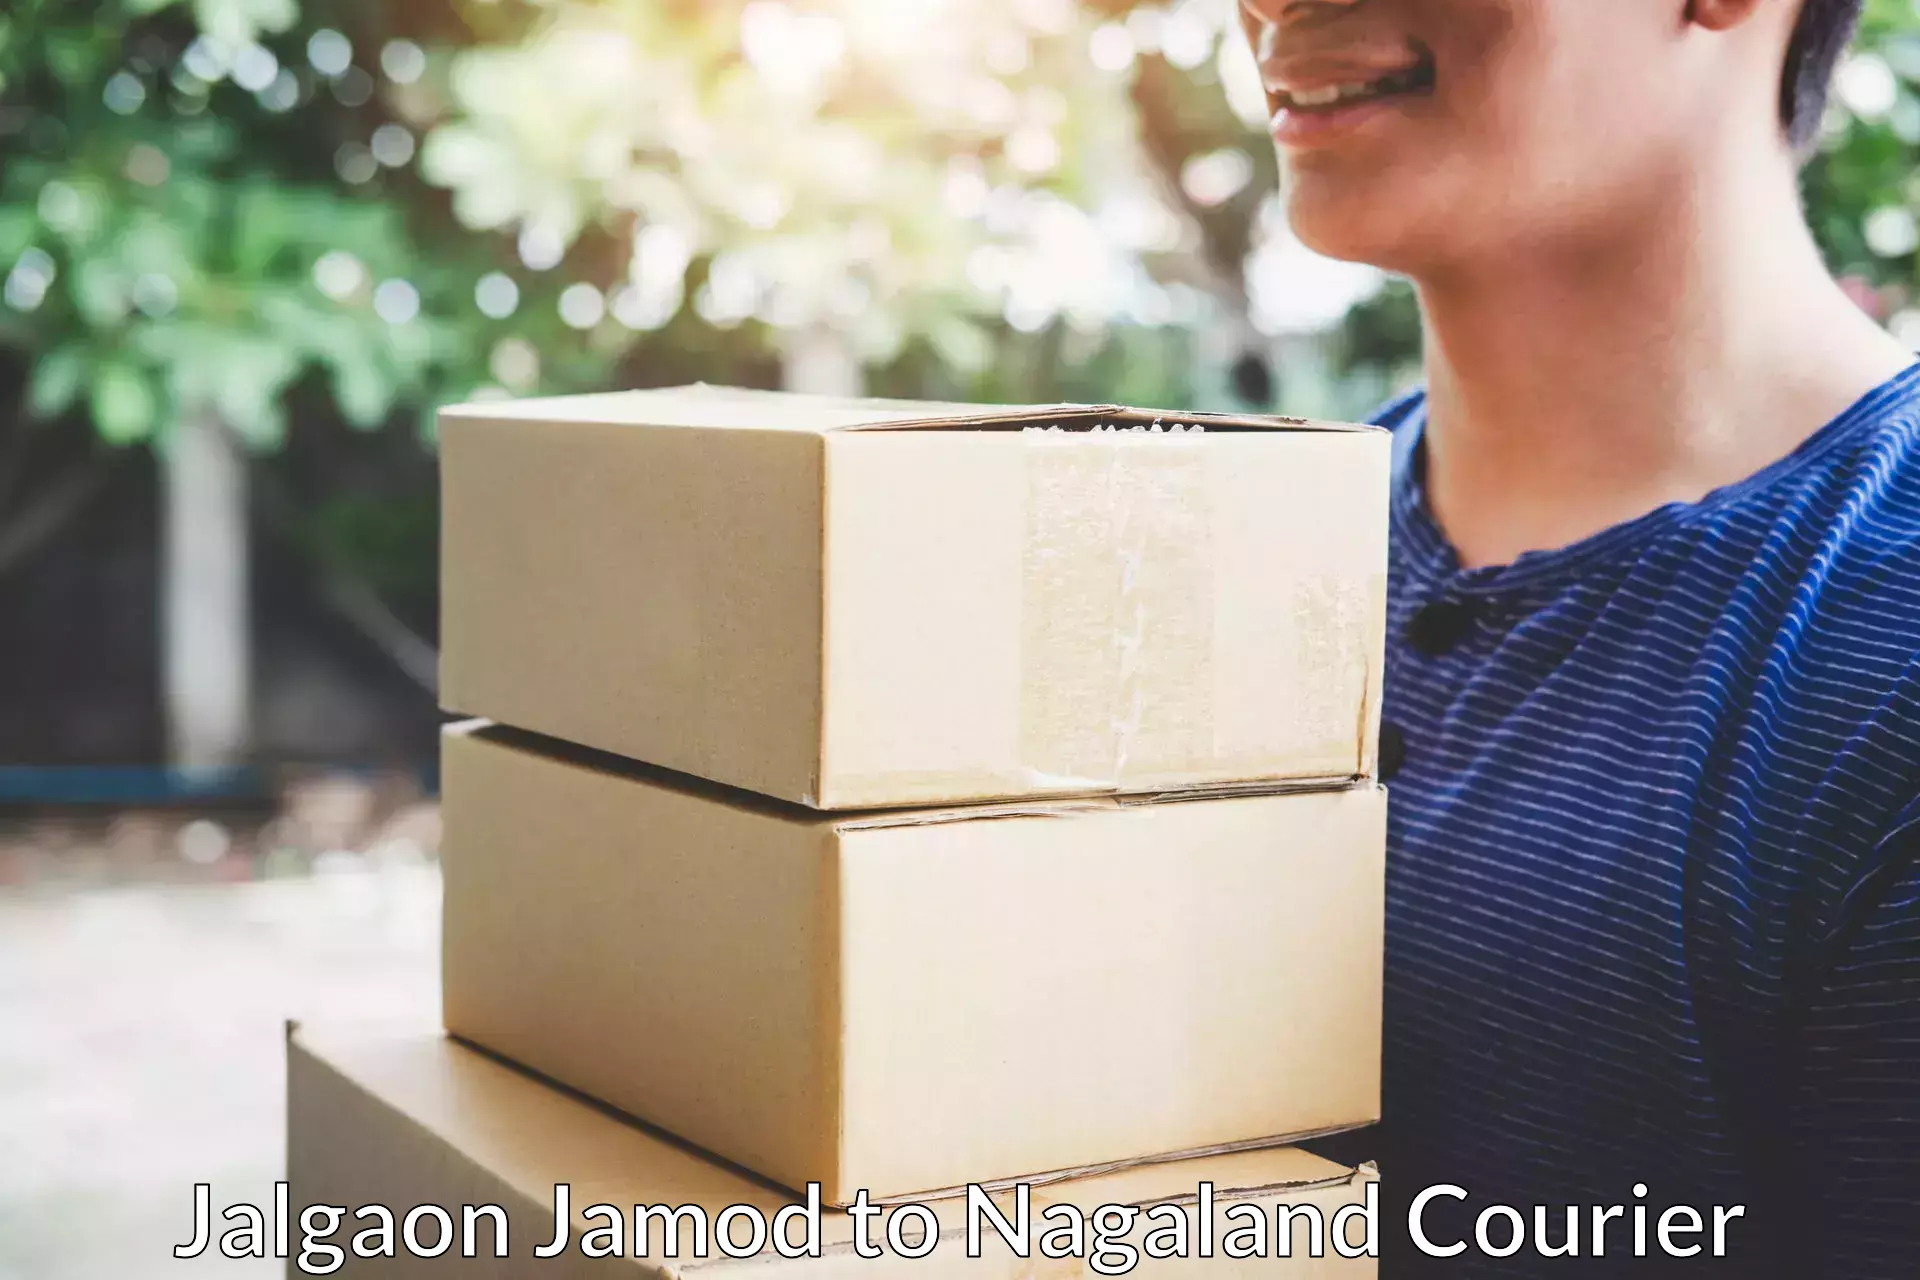 Moving and packing experts Jalgaon Jamod to Nagaland